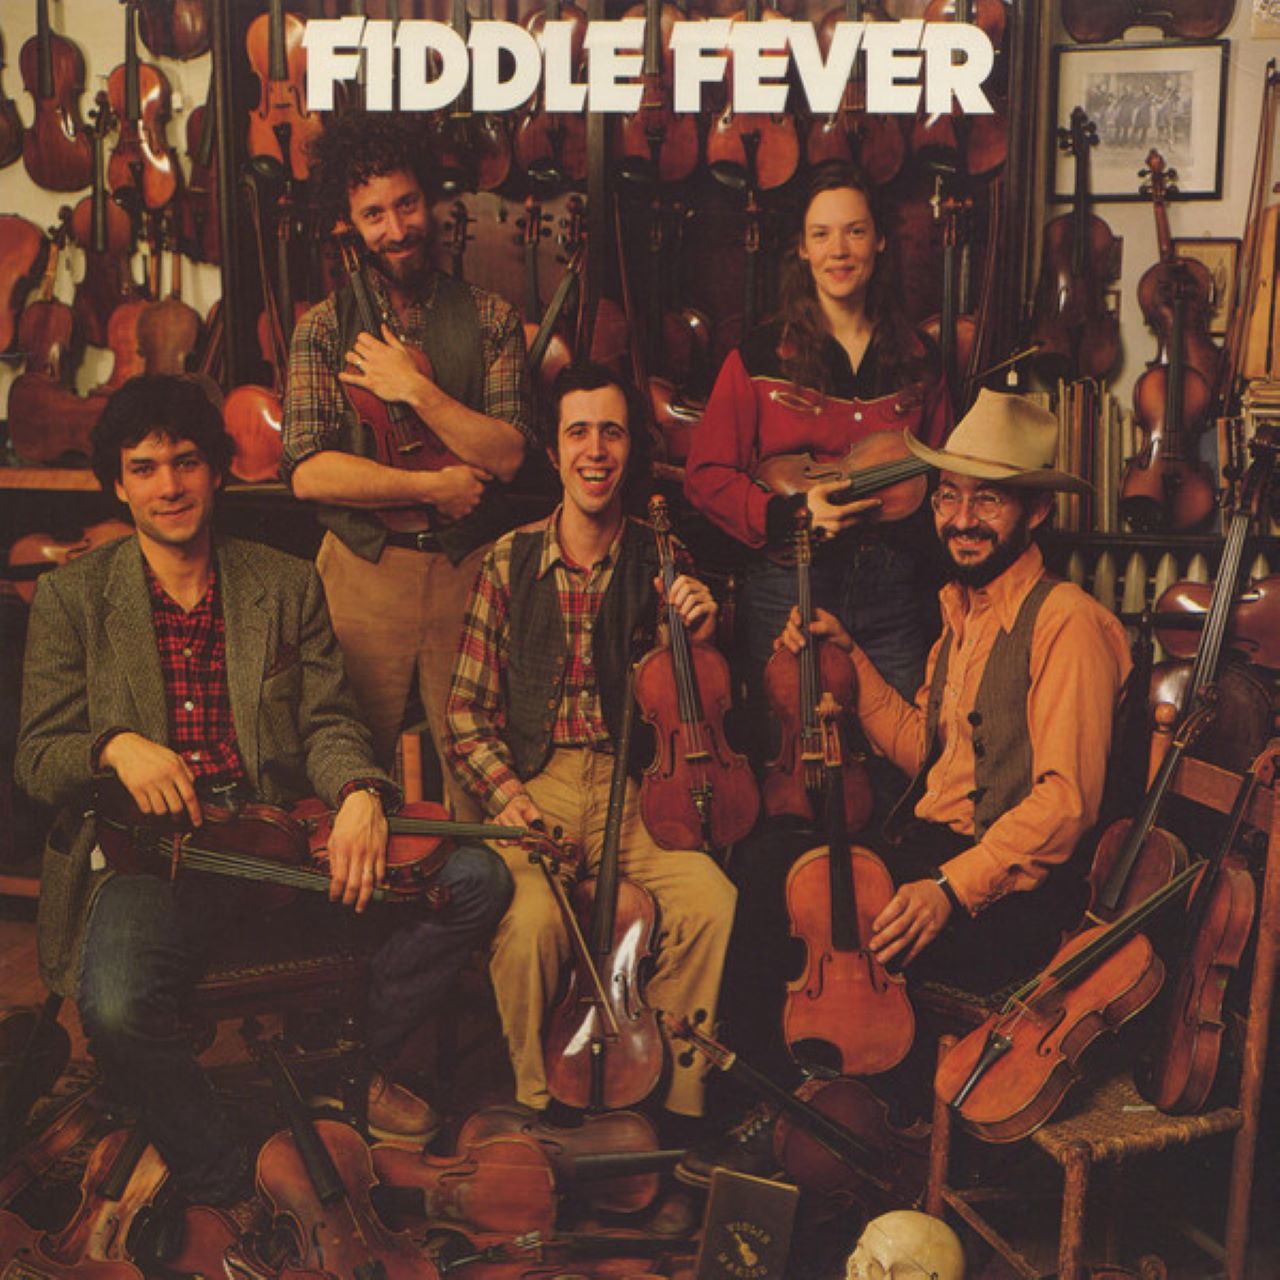 Fiddle Fever - Fiddle Fever cover album